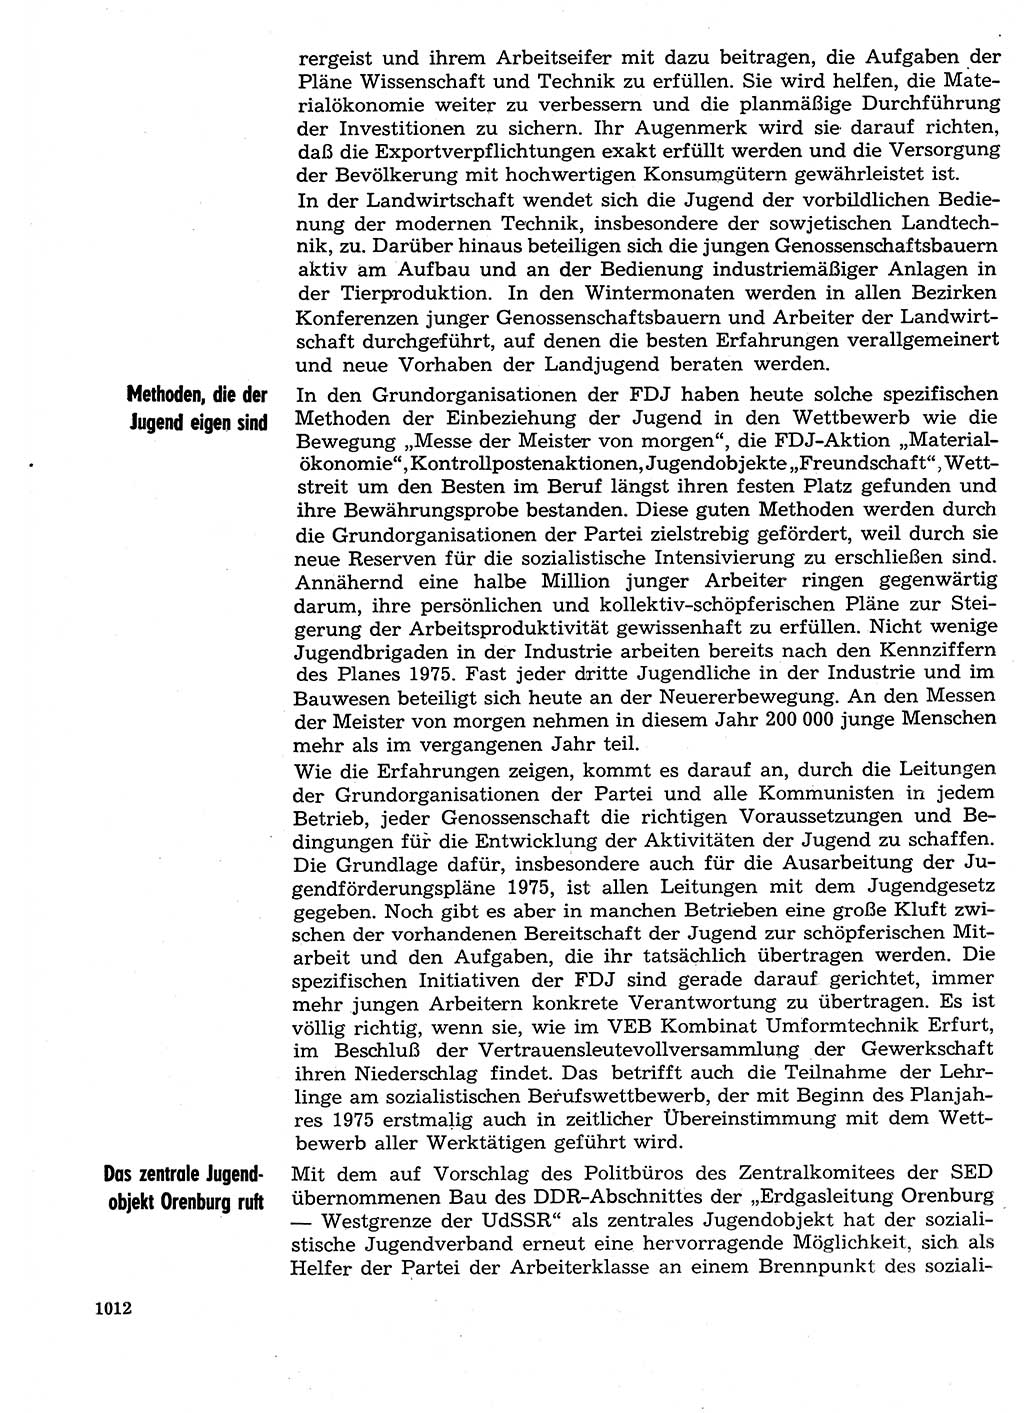 Neuer Weg (NW), Organ des Zentralkomitees (ZK) der SED (Sozialistische Einheitspartei Deutschlands) für Fragen des Parteilebens, 29. Jahrgang [Deutsche Demokratische Republik (DDR)] 1974, Seite 1012 (NW ZK SED DDR 1974, S. 1012)